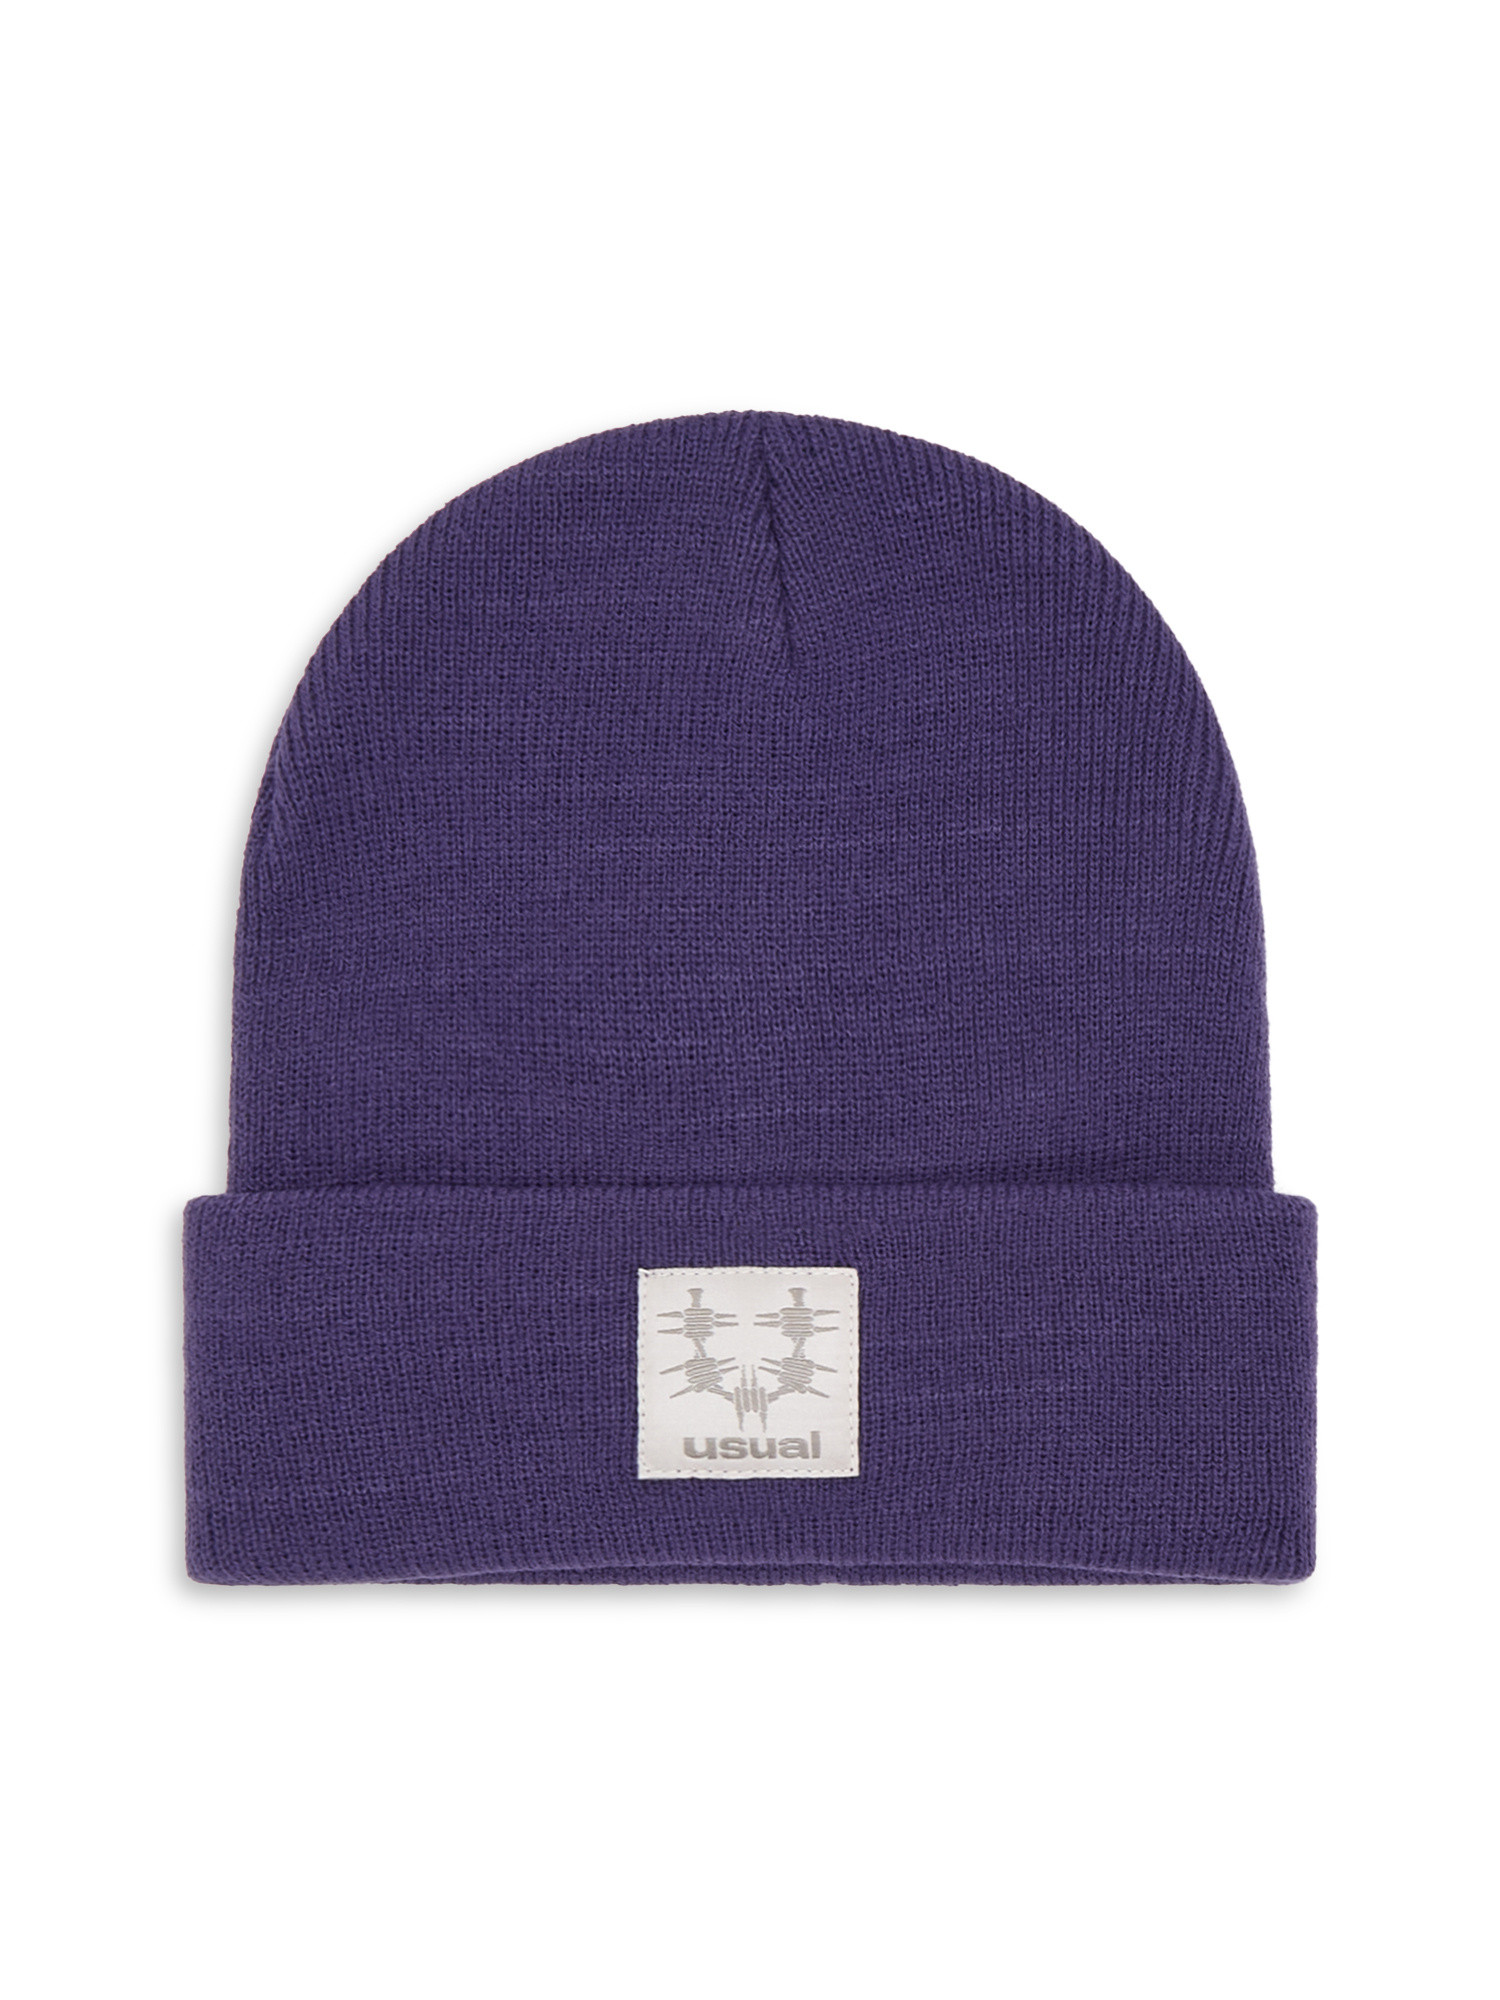 Usual шапка-бини OG, фиолетовый